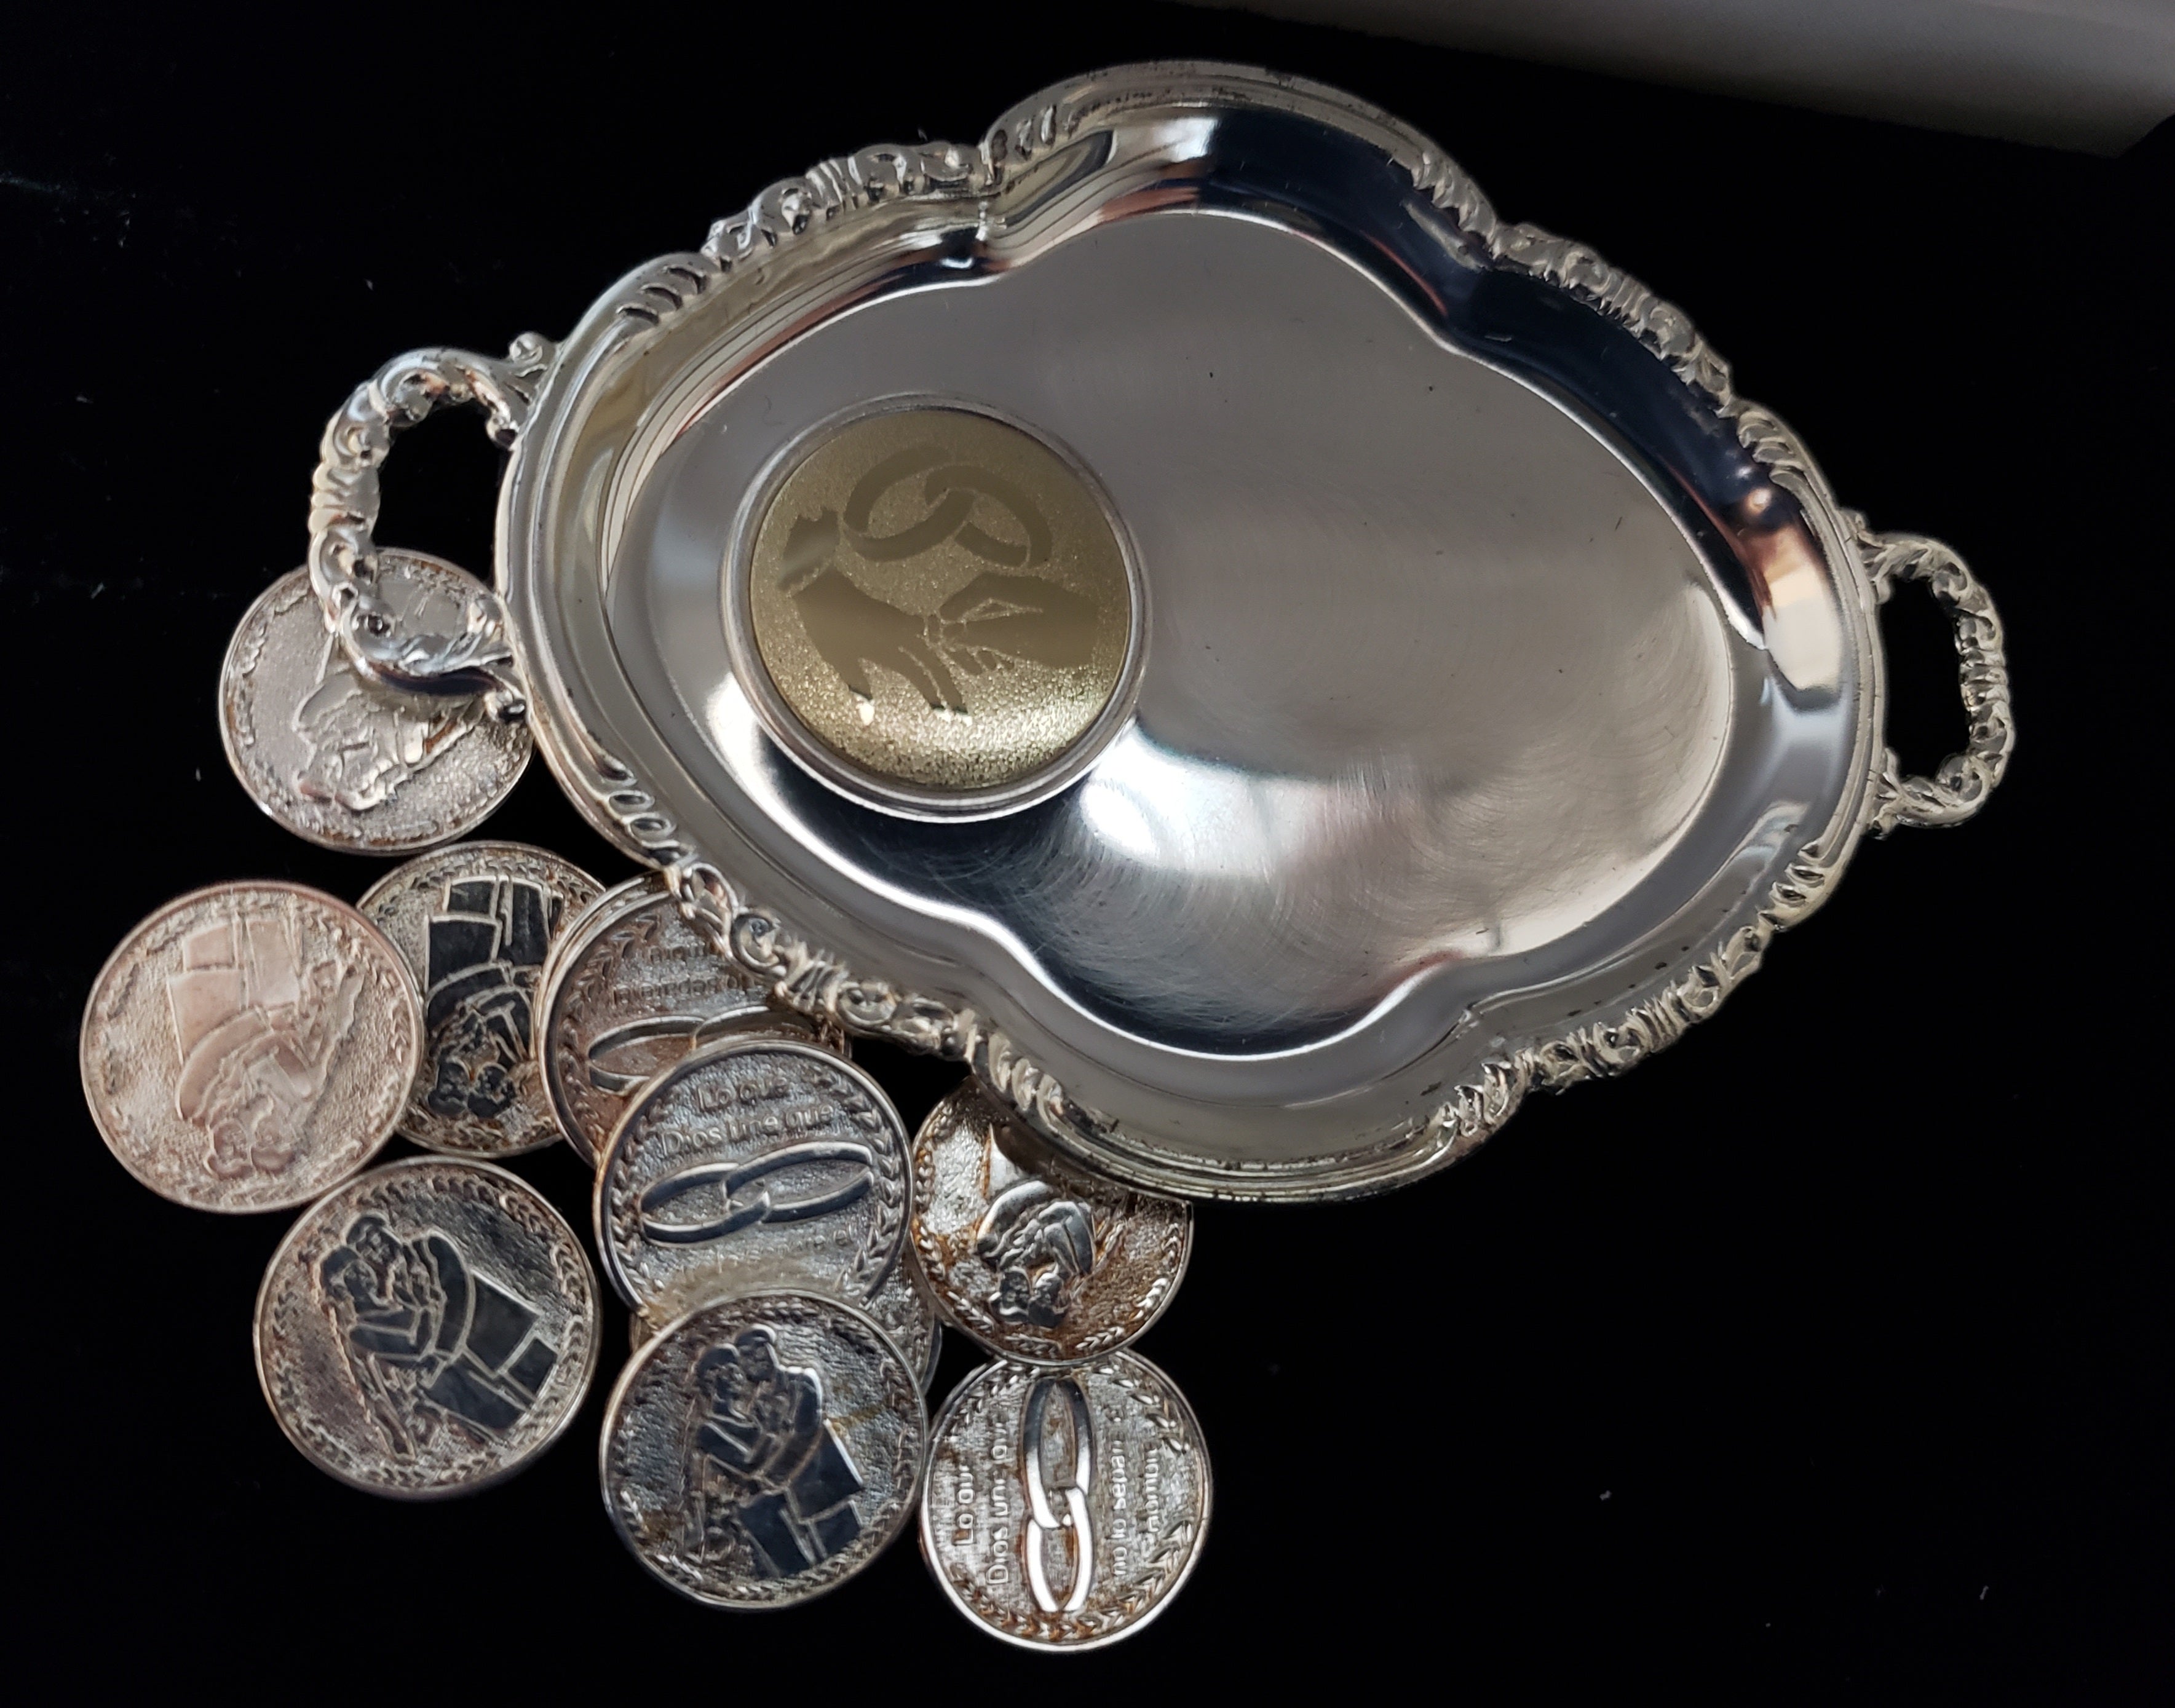 Wedding Unity Coins - Arras de Boda